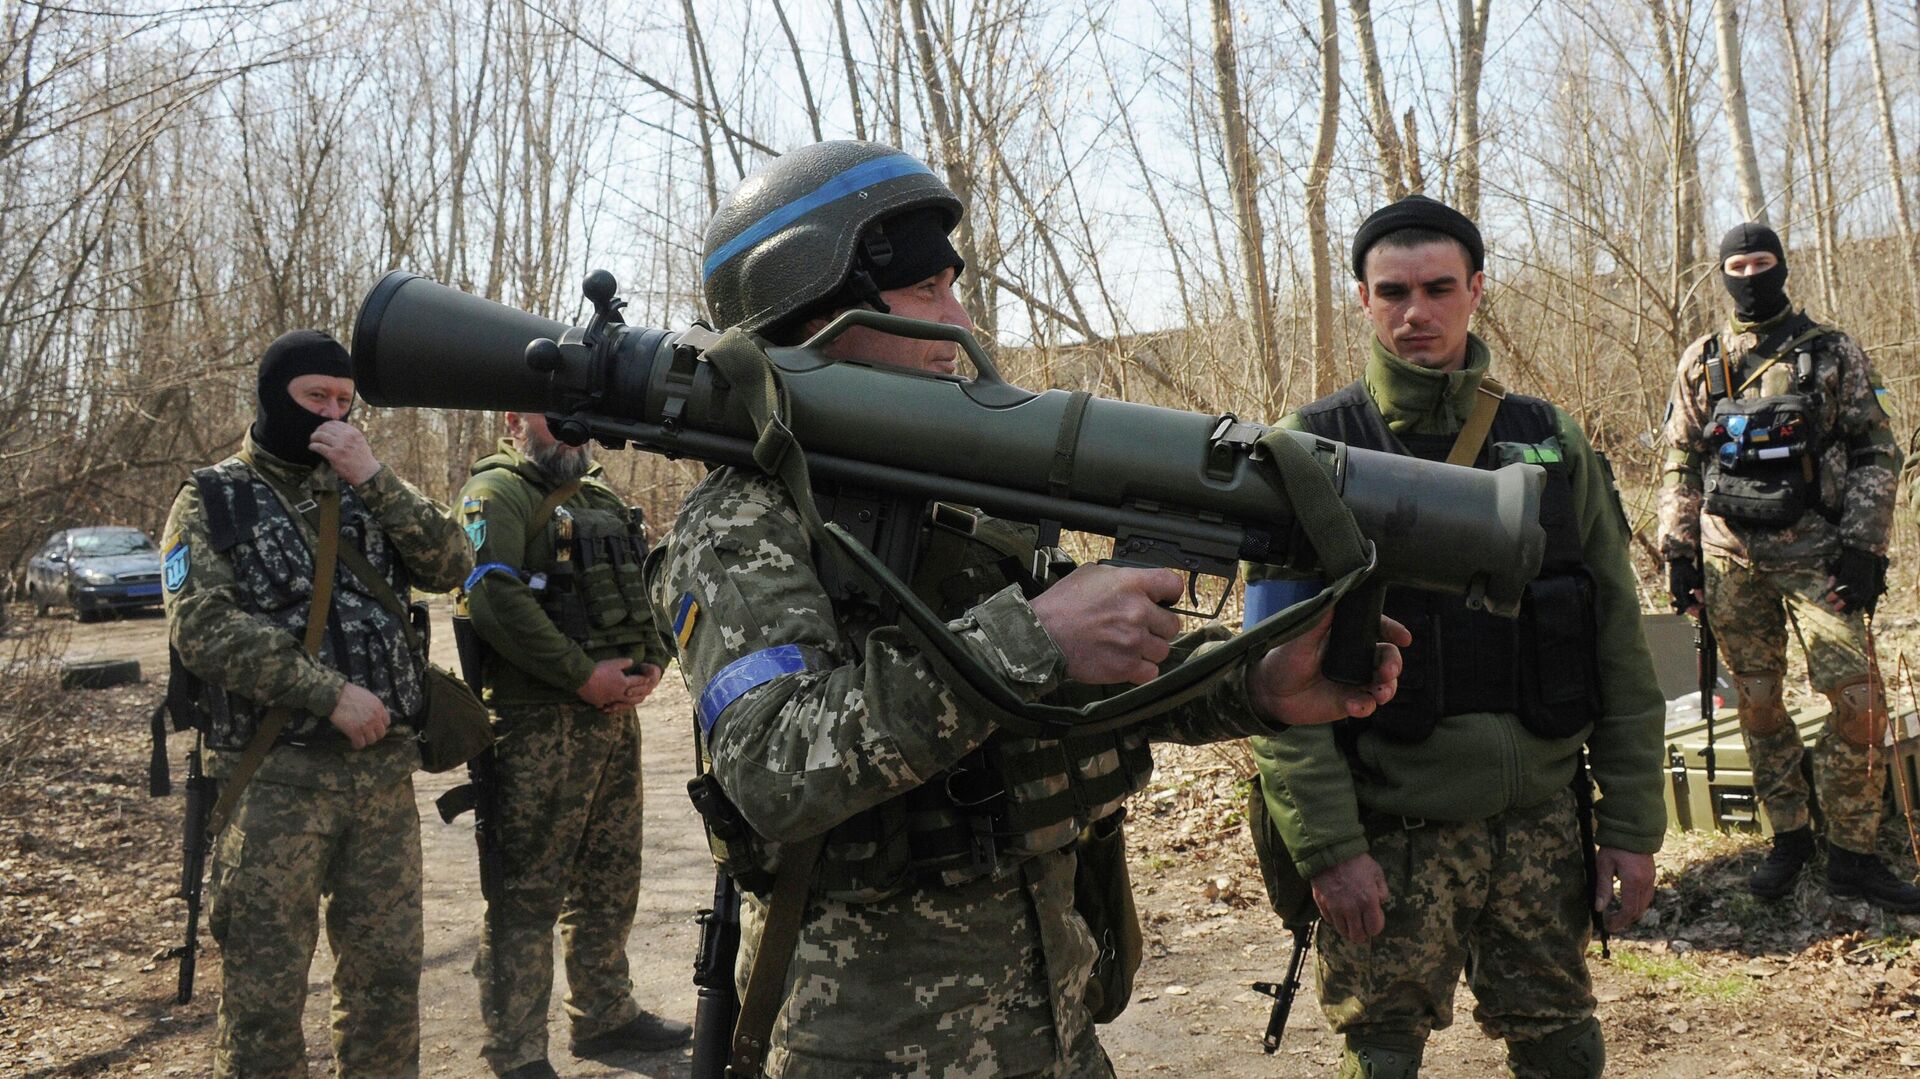 ハリコフ近郊でスウェーデンの無反動砲「カール・グスタフM4」の使い方を習得するウクライナ兵 - Sputnik 日本, 1920, 21.04.2023